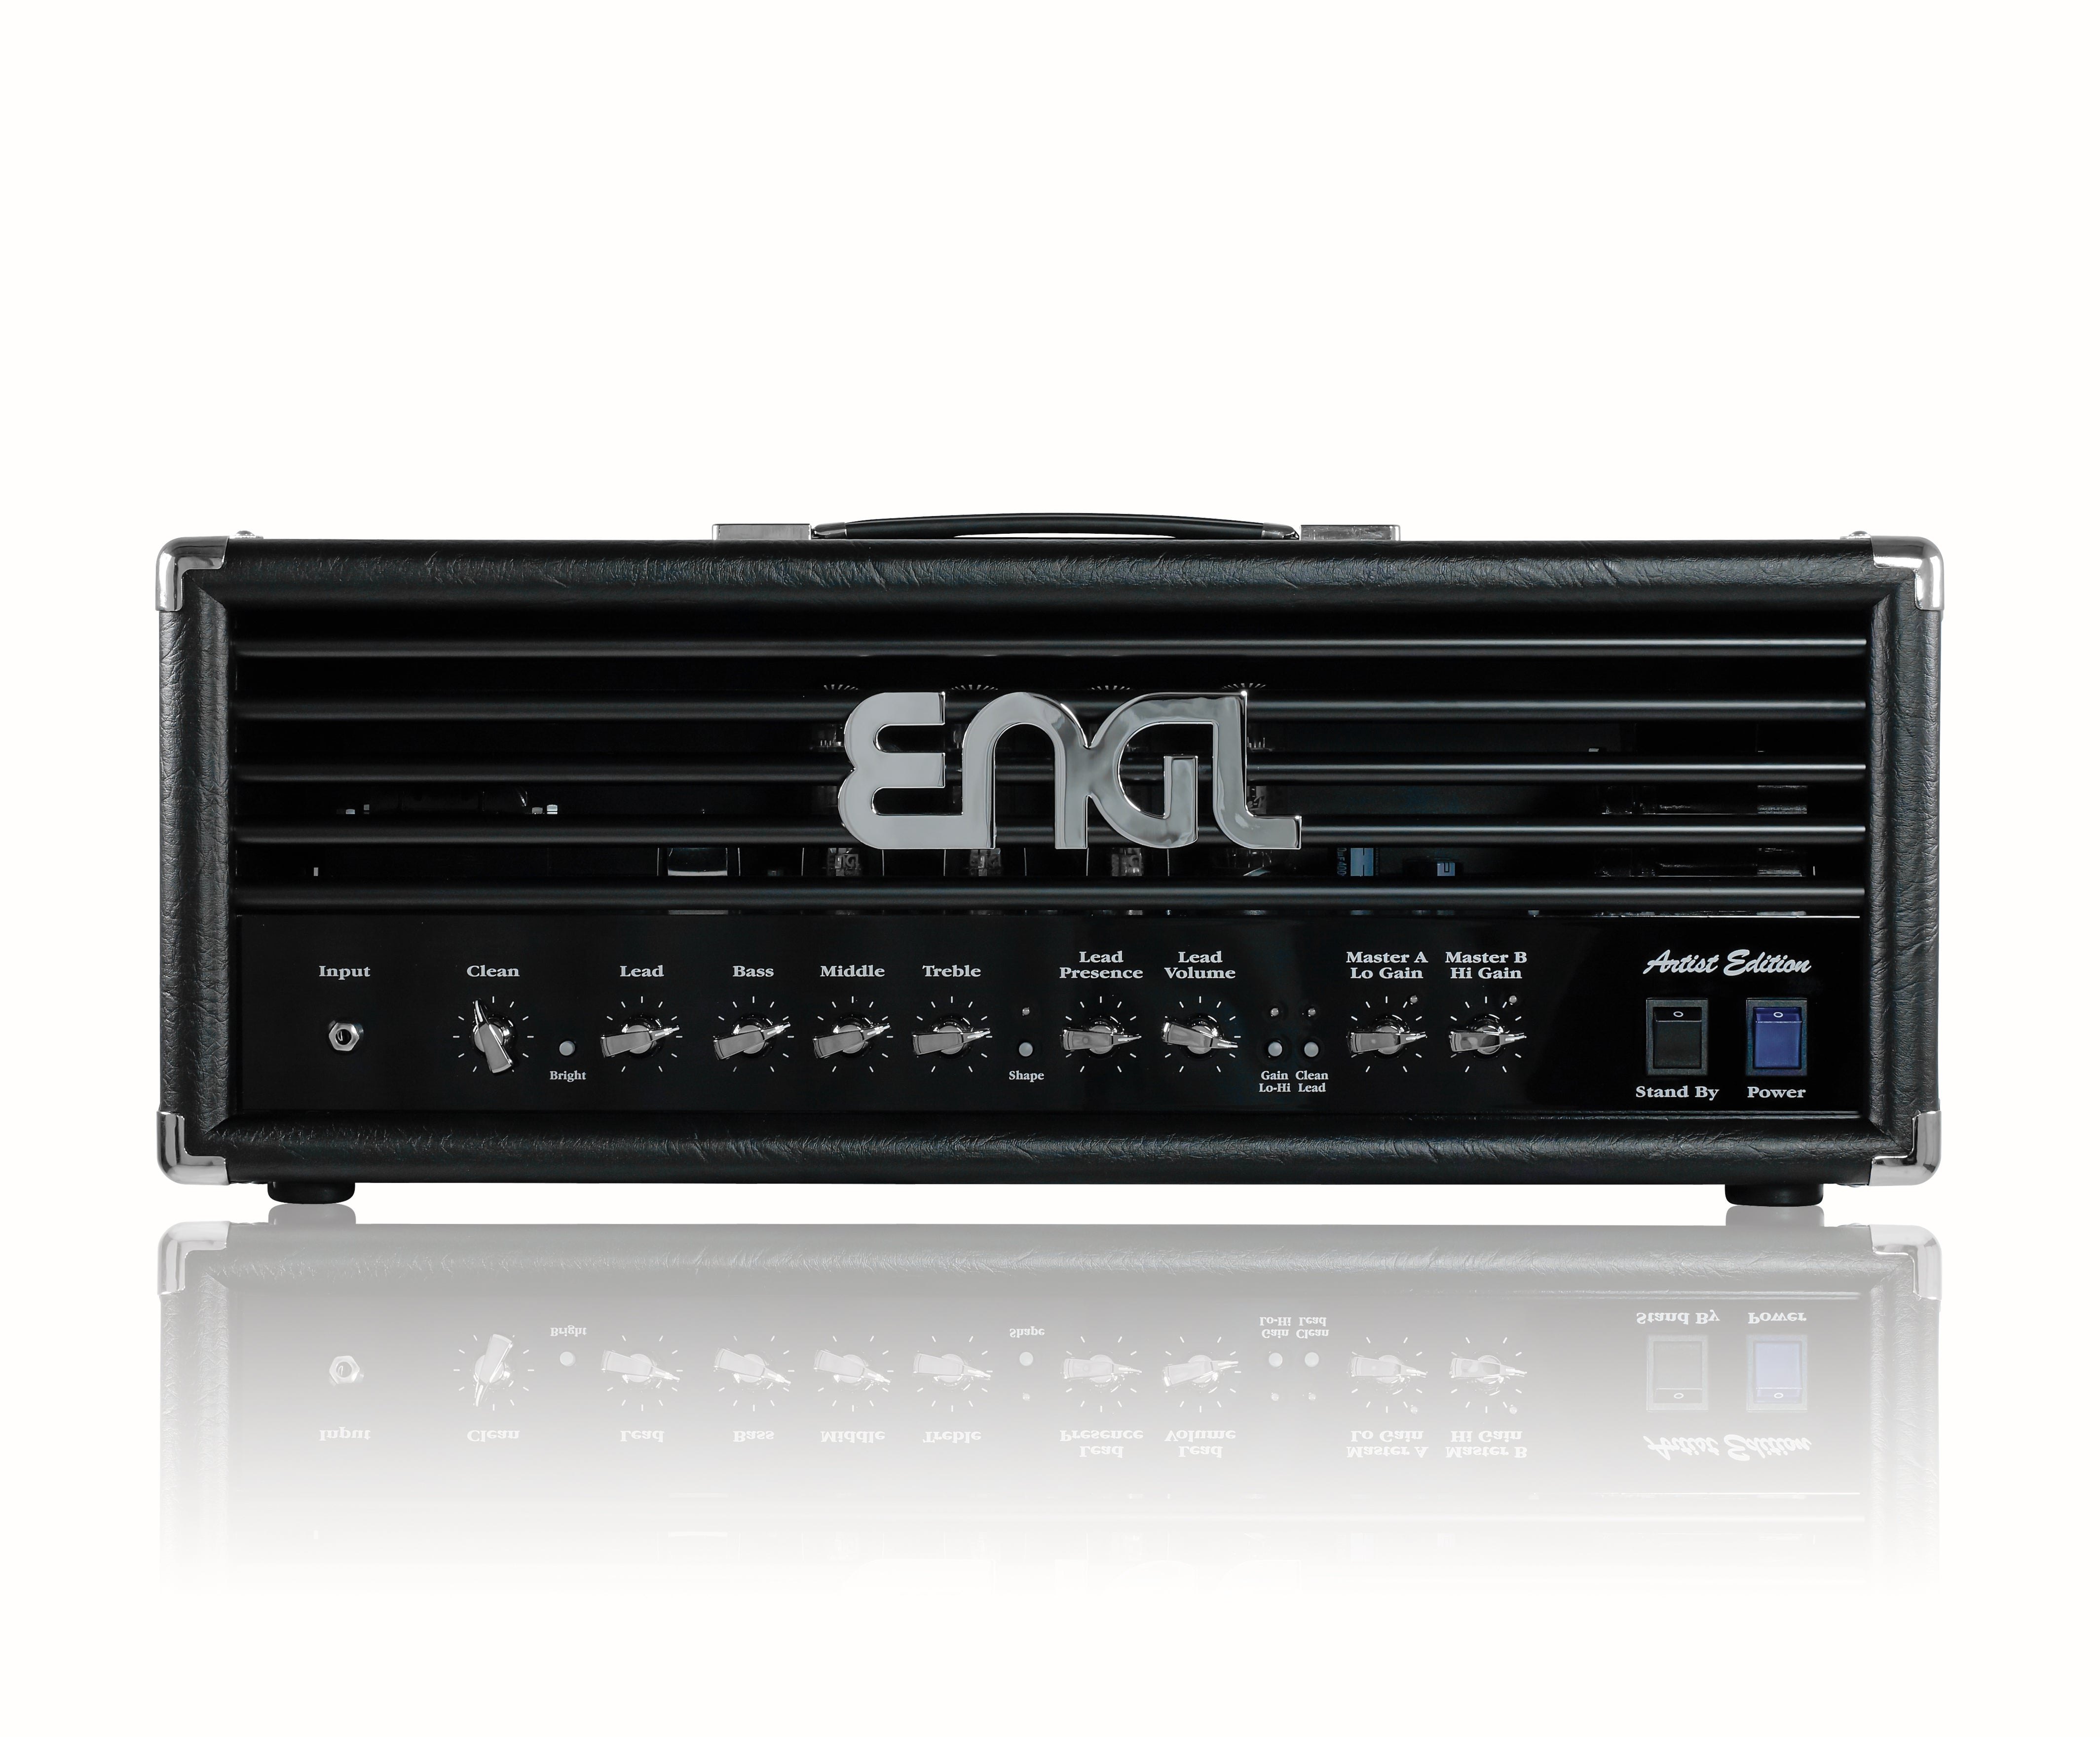 ENGL ARTIST EDITION 100 E651 HEAD - HIENDGUITAR   ENGL amp